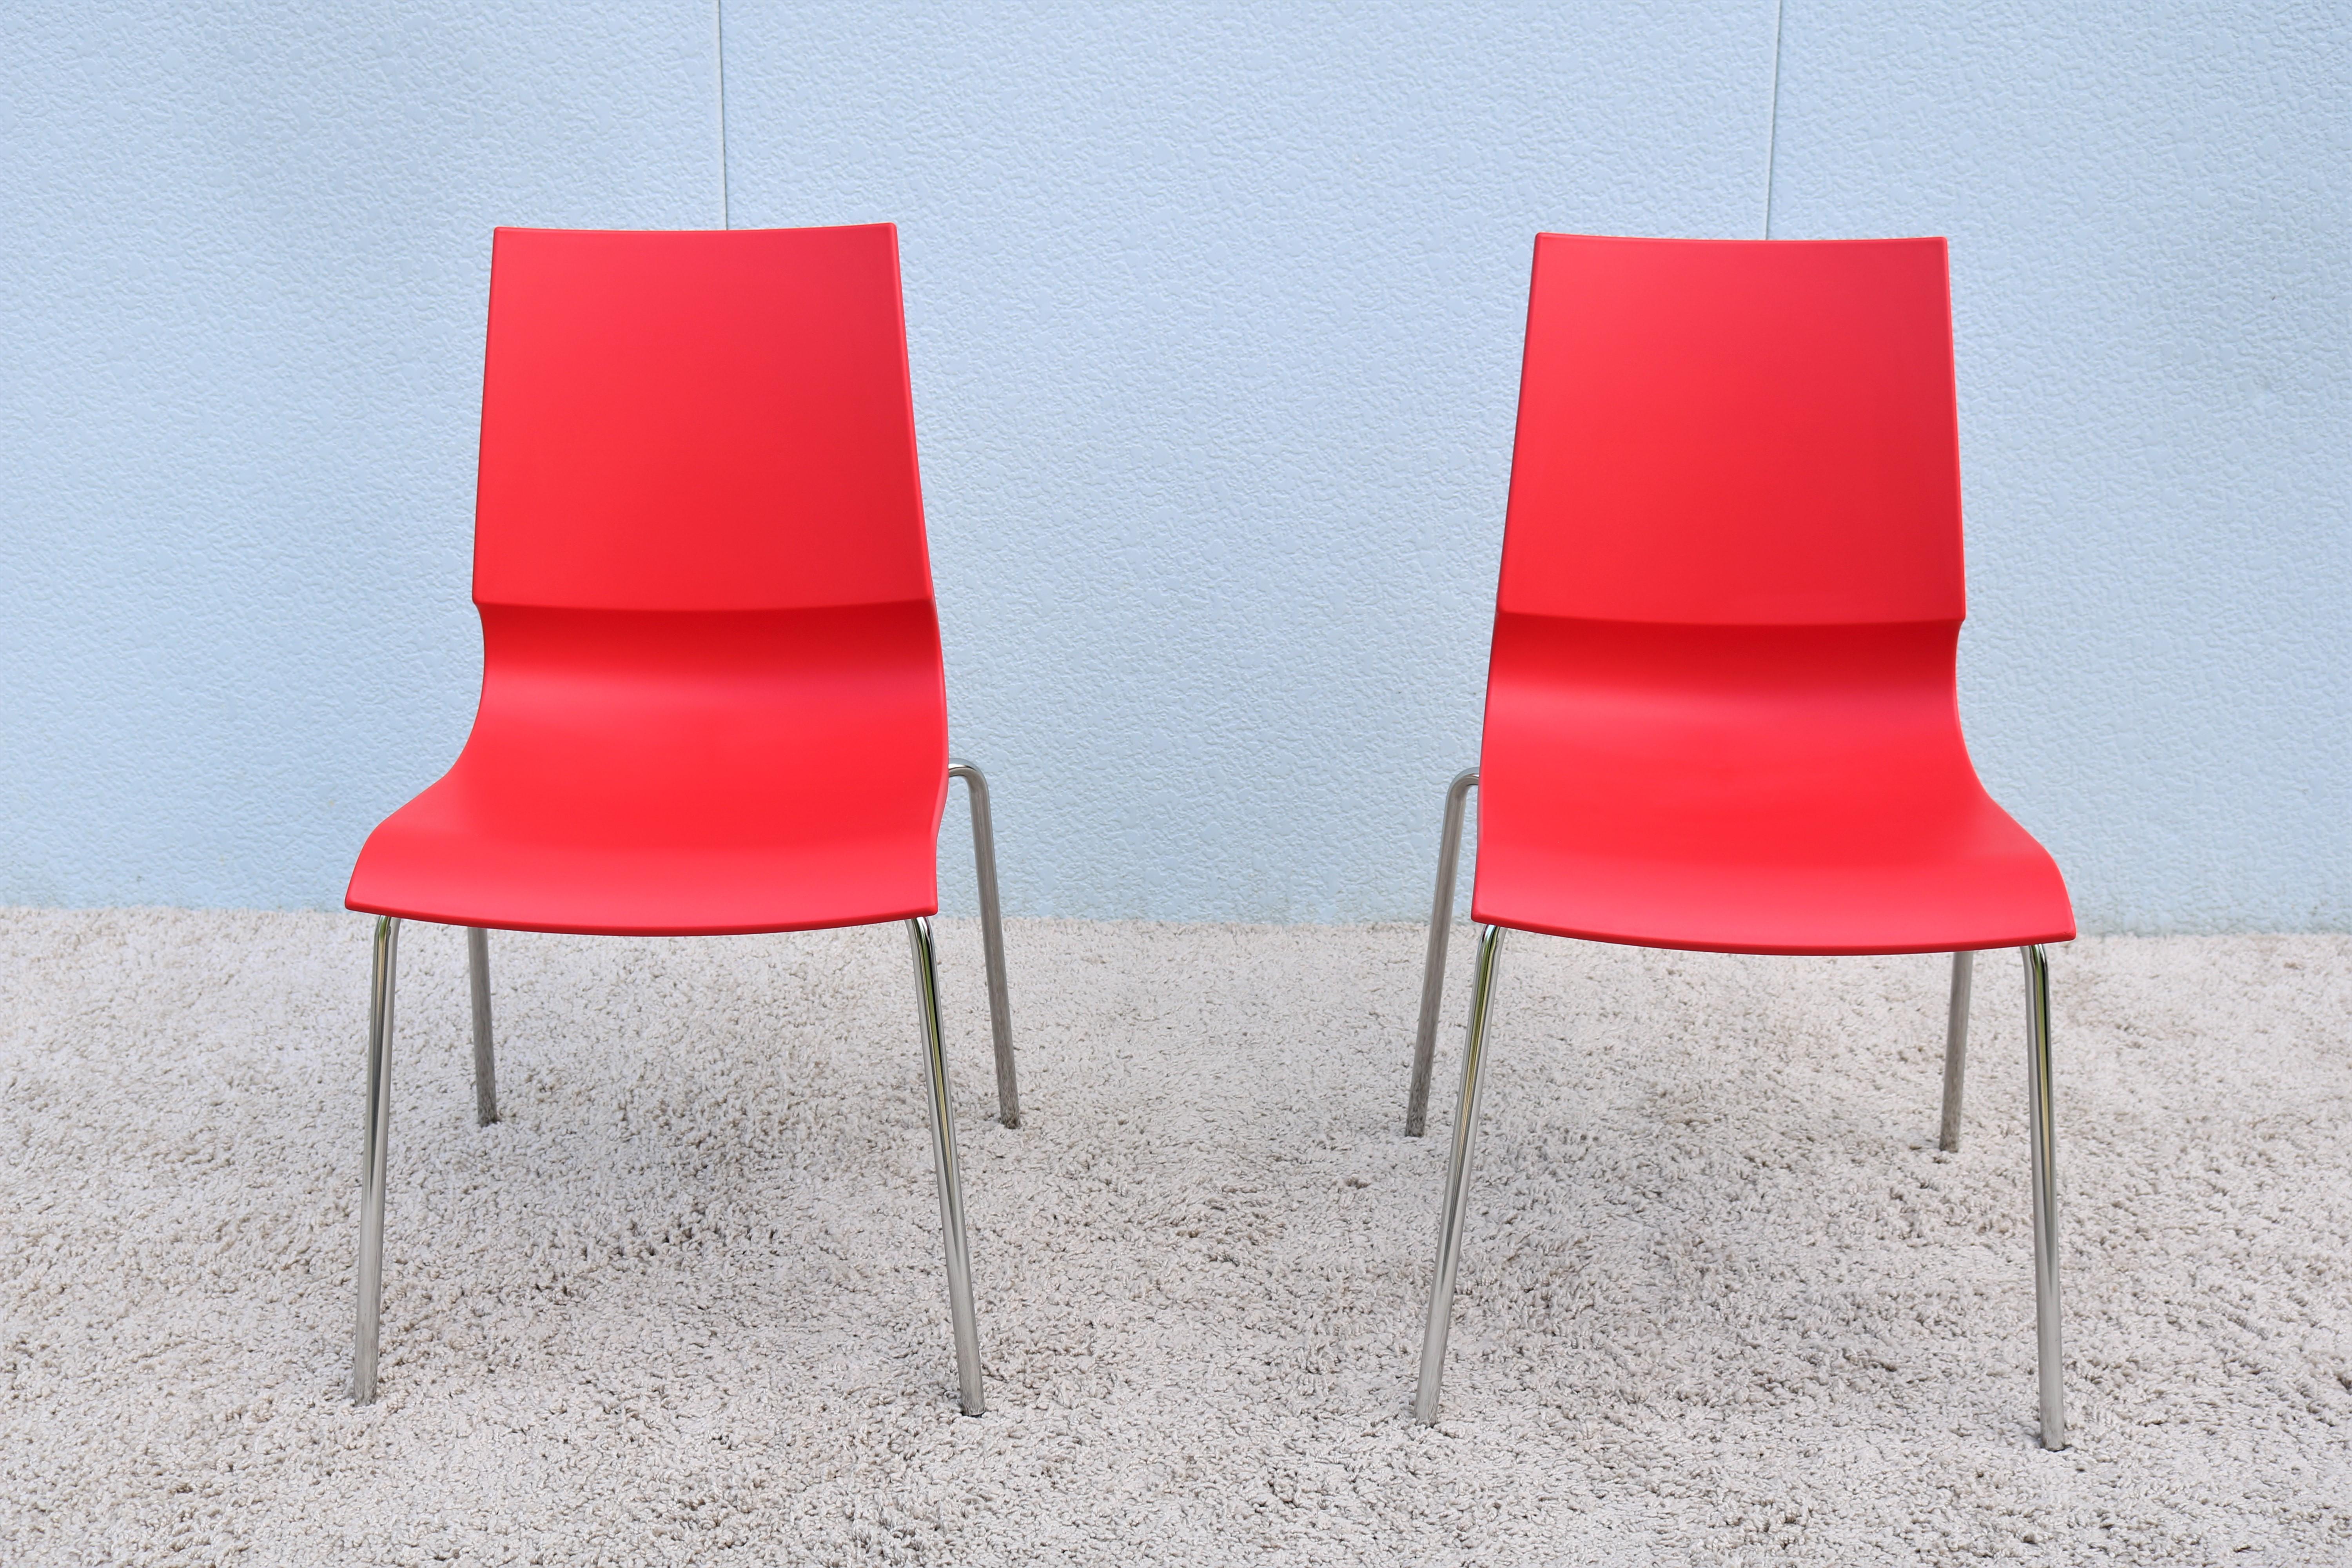 Les chaises Ricciolina, aux lignes épurées et élégantes, sont stylées et fonctionnelles. 
La liaison courbée caractéristique entre l'assise et le dossier confère à la chaise souplesse et ergonomie. 
Sa conception légère et sa fonction d'empilage